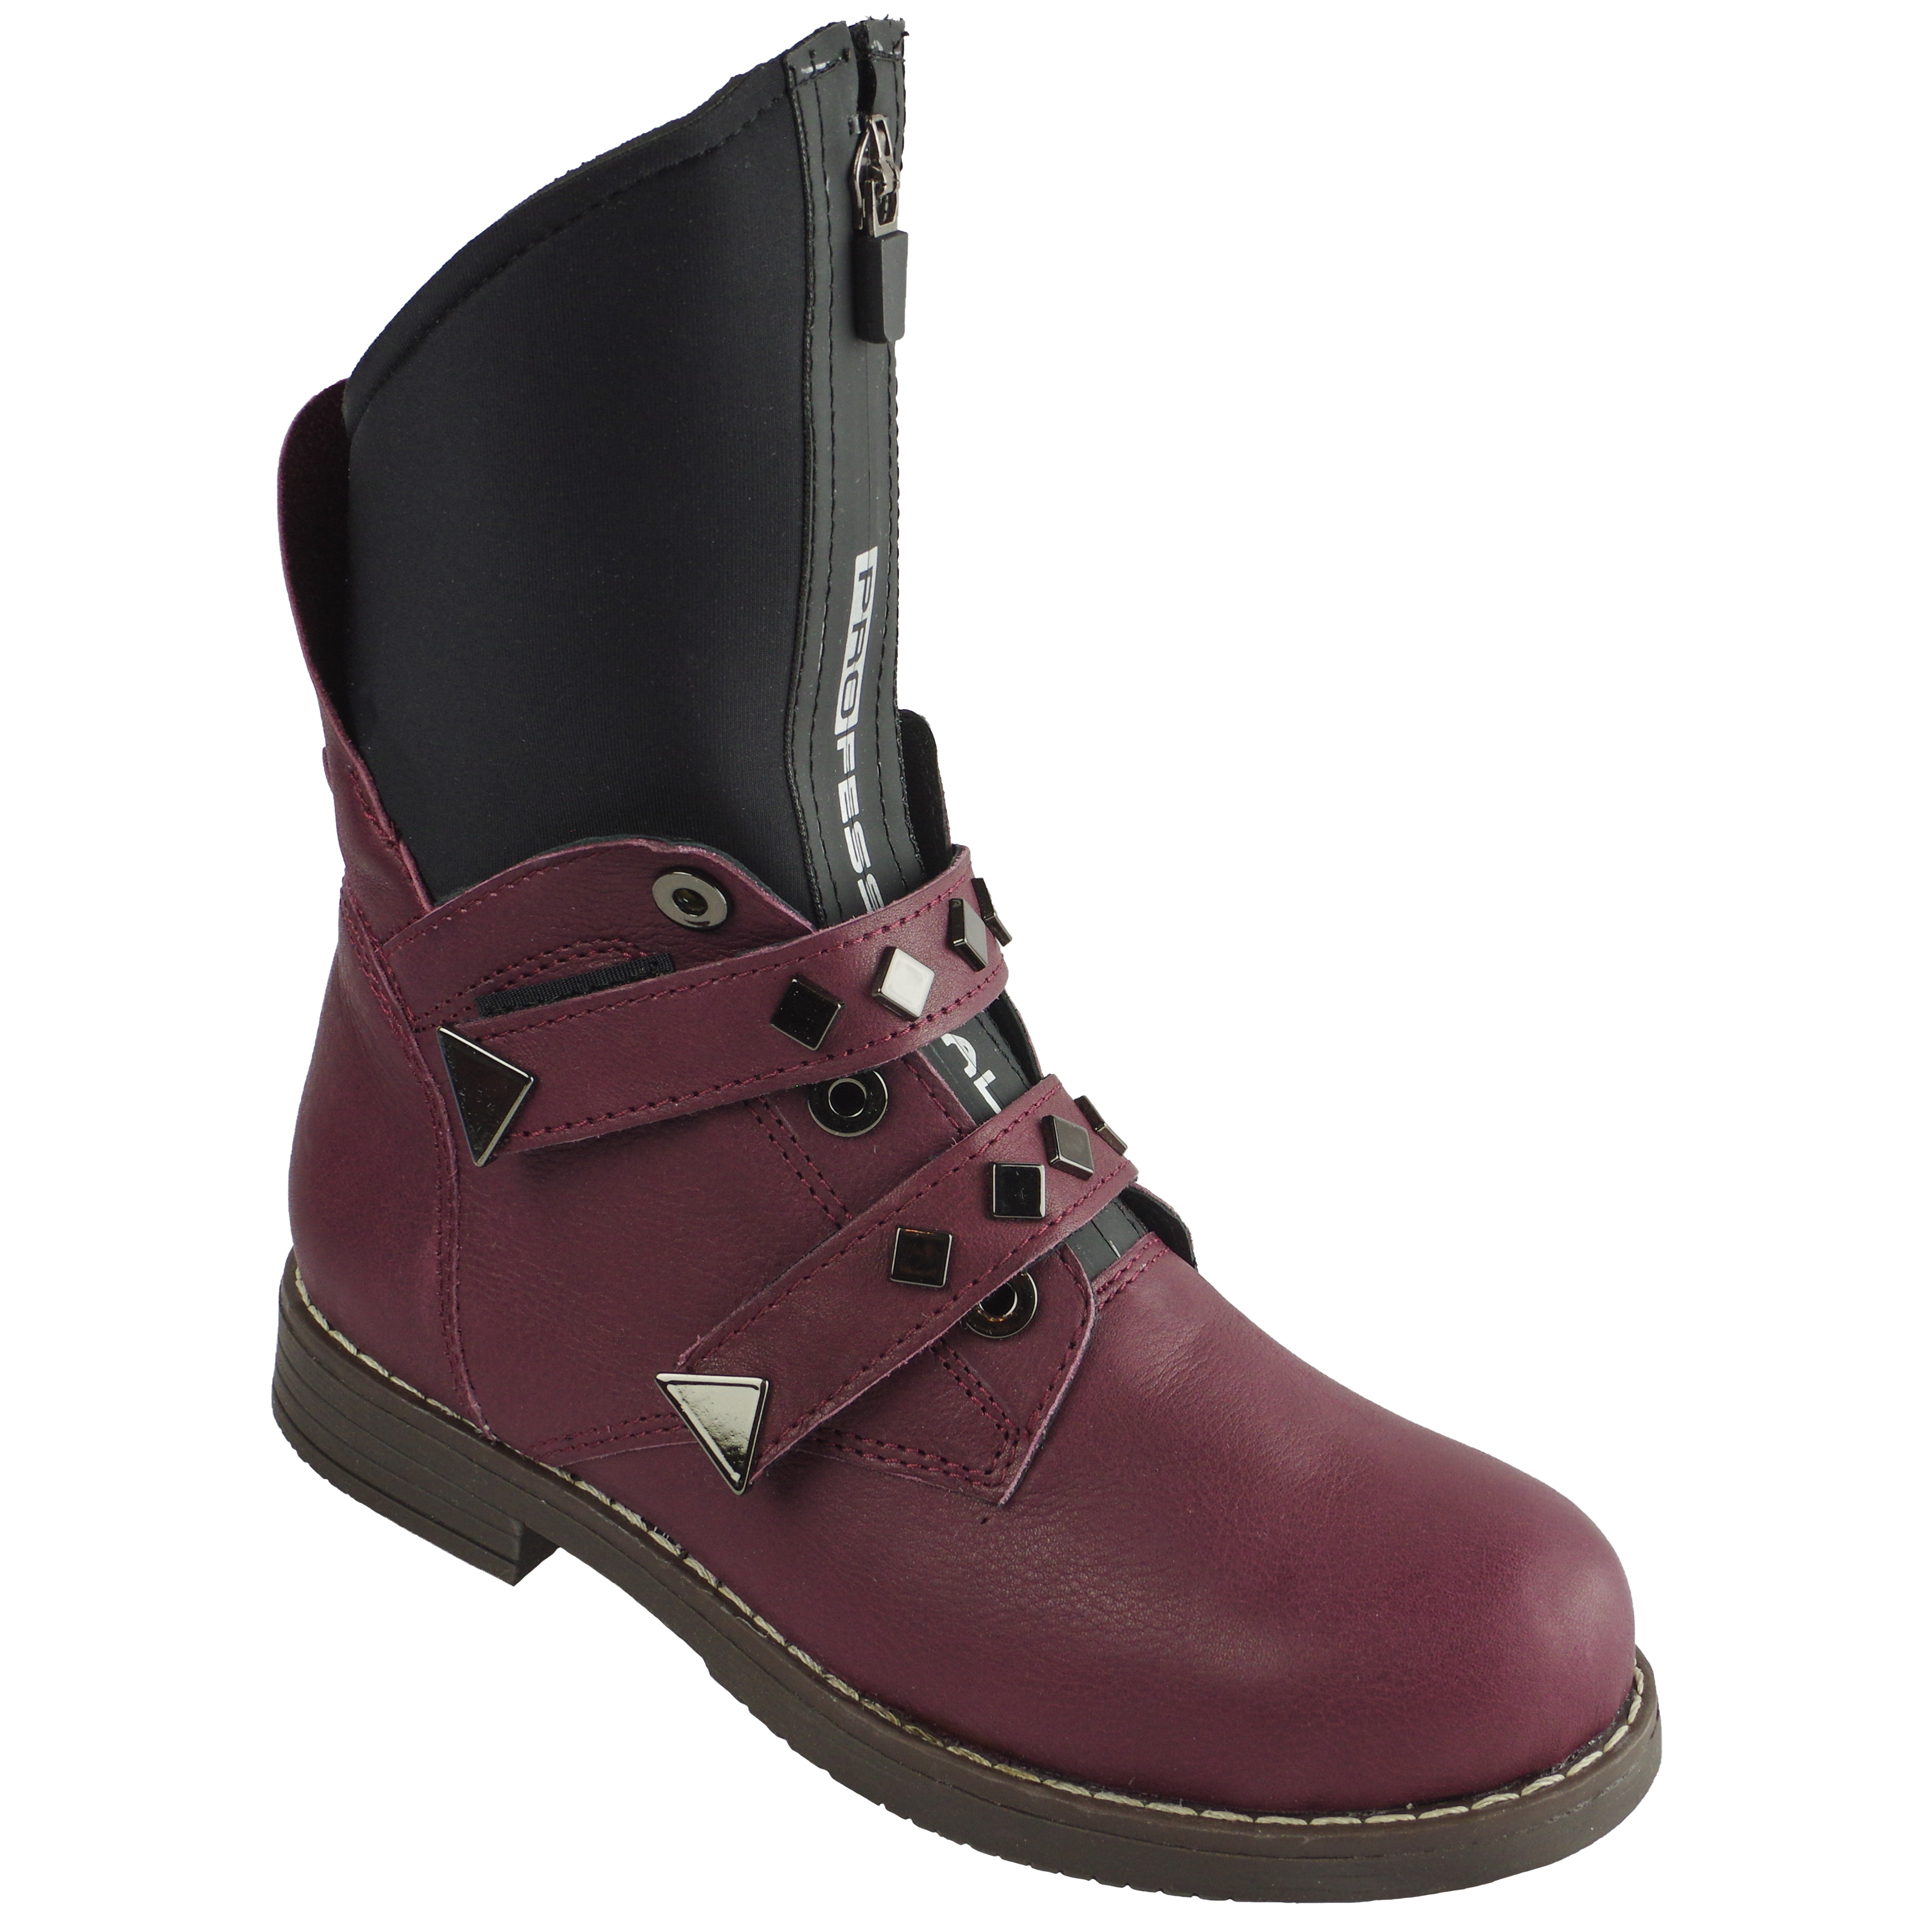 Демисезонные ботинки подростковые (2064) материал Натуральная кожа, цвет Бордовый  для девочки 32-38 размеры – Sole Kids